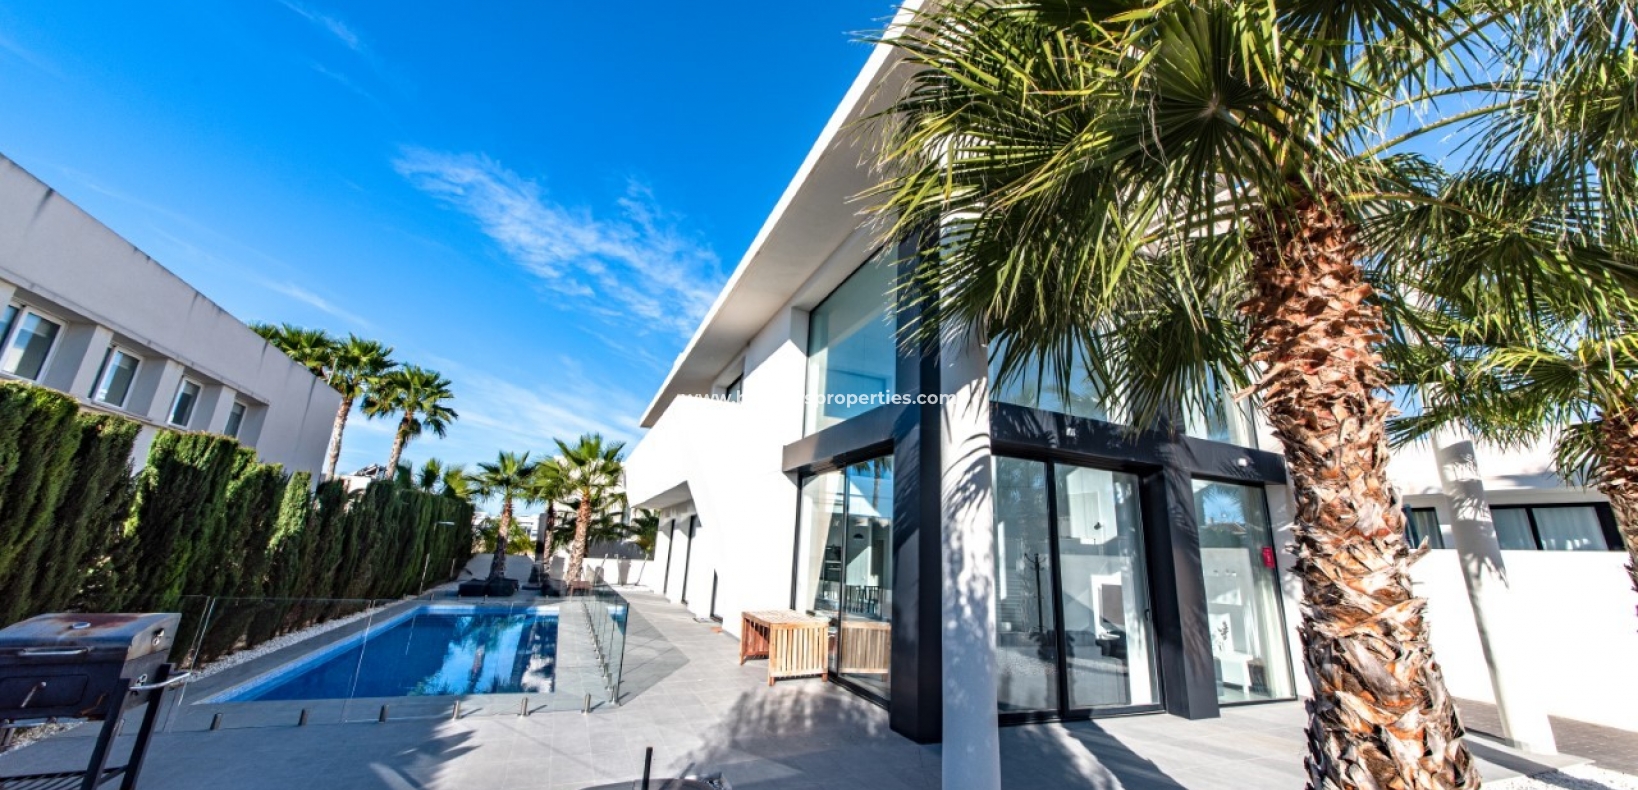 Eigendom - Nieuwbouw villa te koop in Urb La Marina